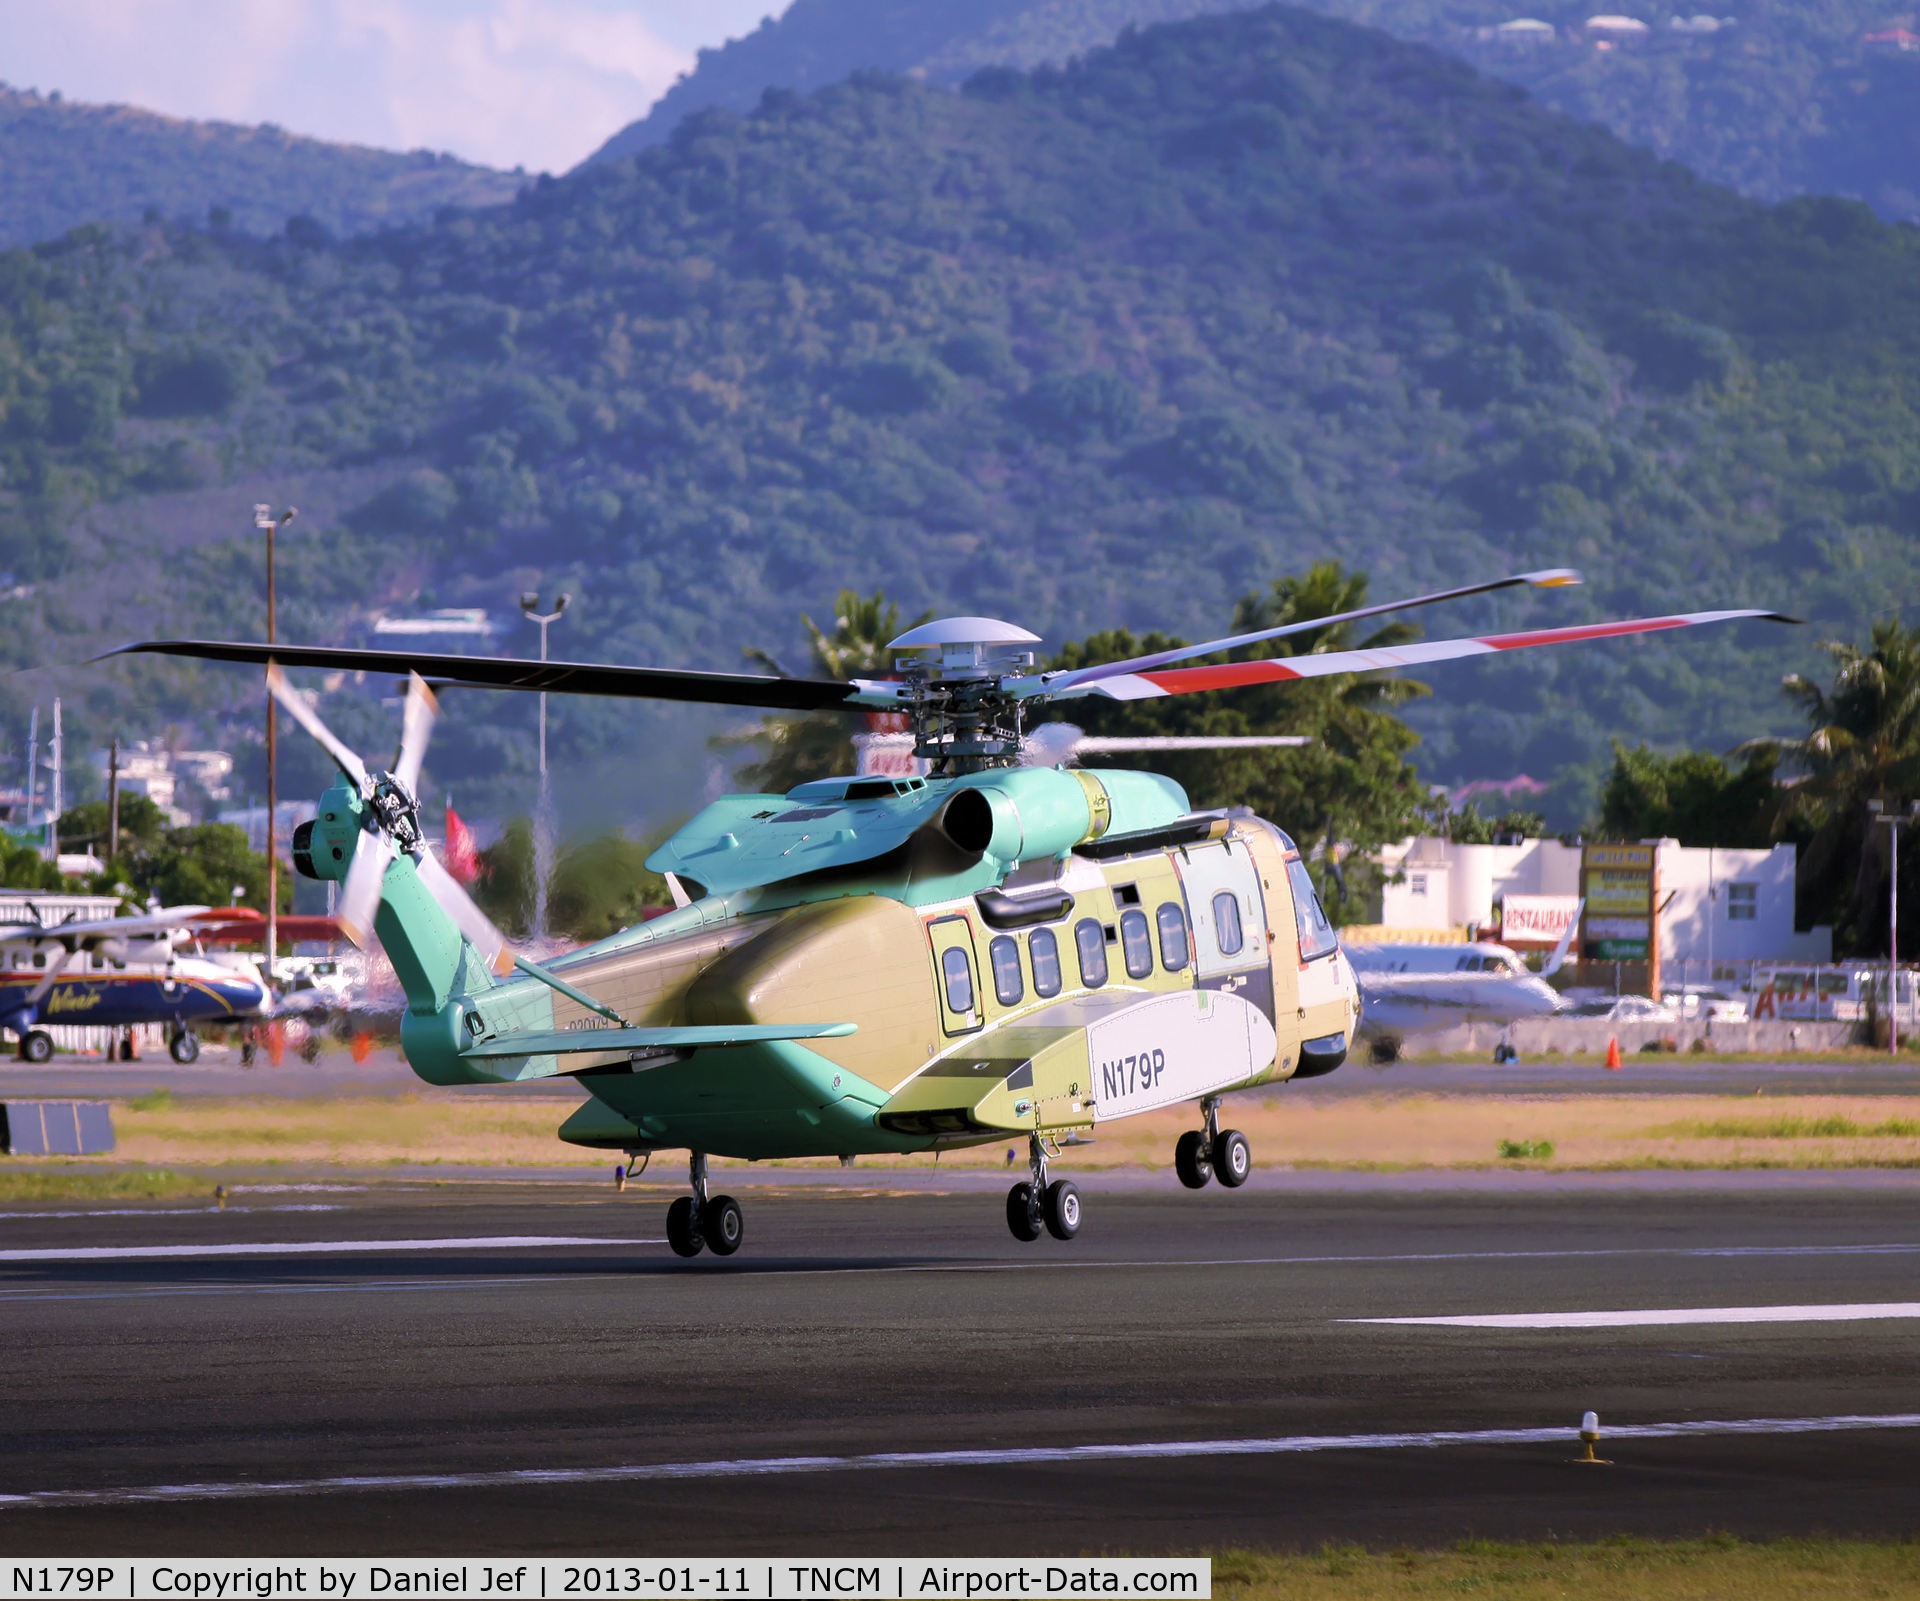 N179P, 2012 Sikorsky S-92A C/N 920179, N179P